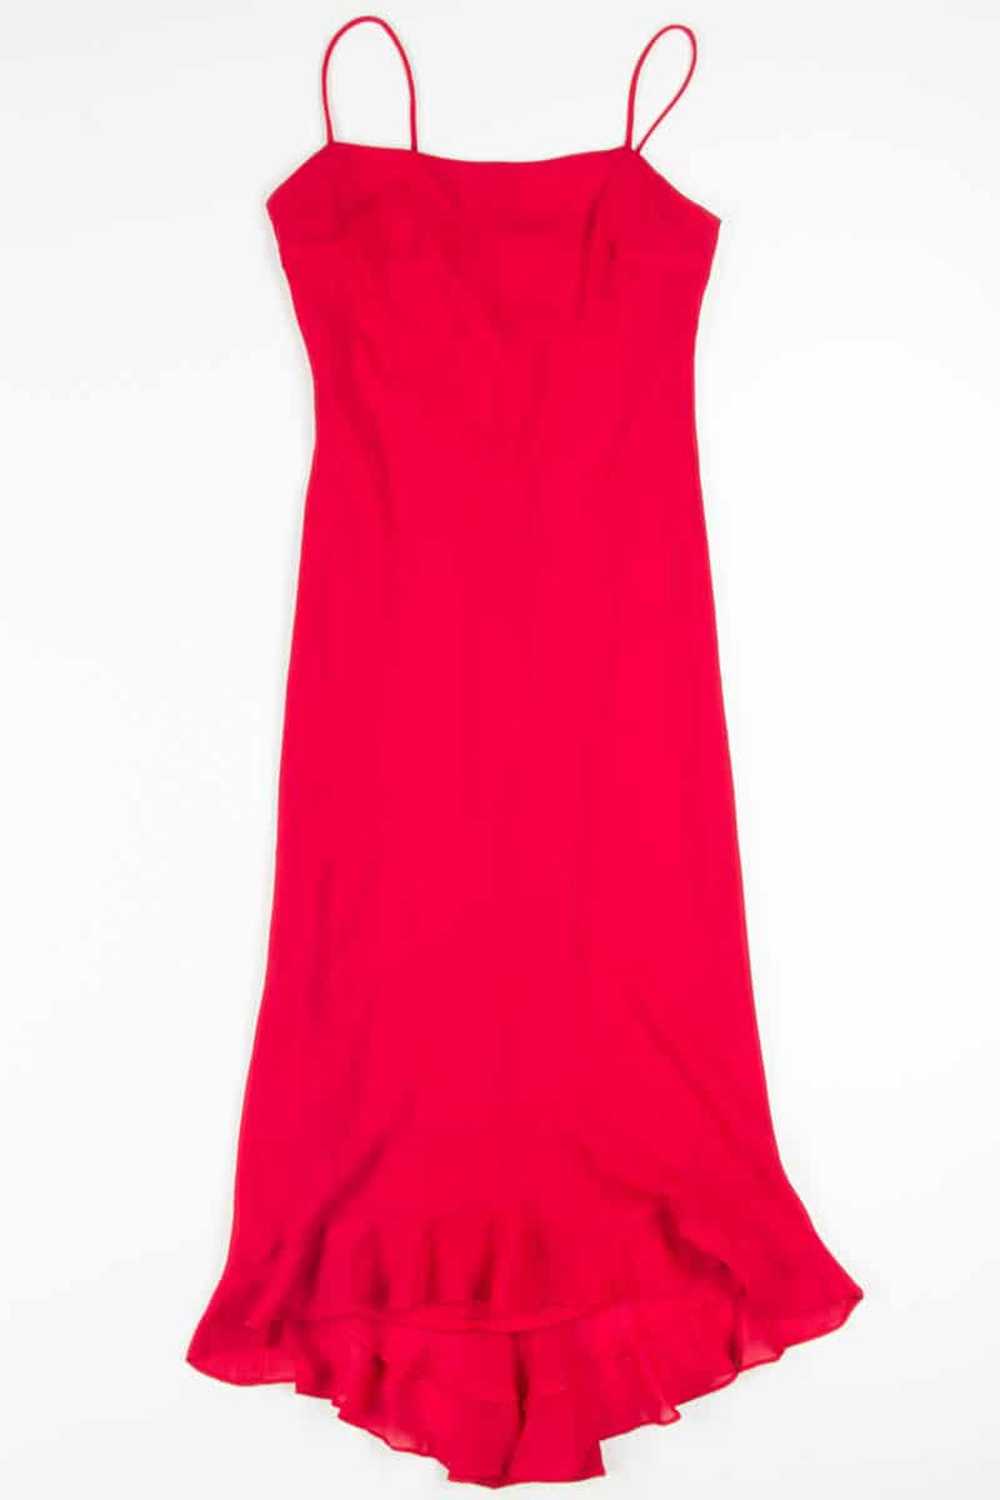 Red Chiffon Ruffle Evening Dress - image 3